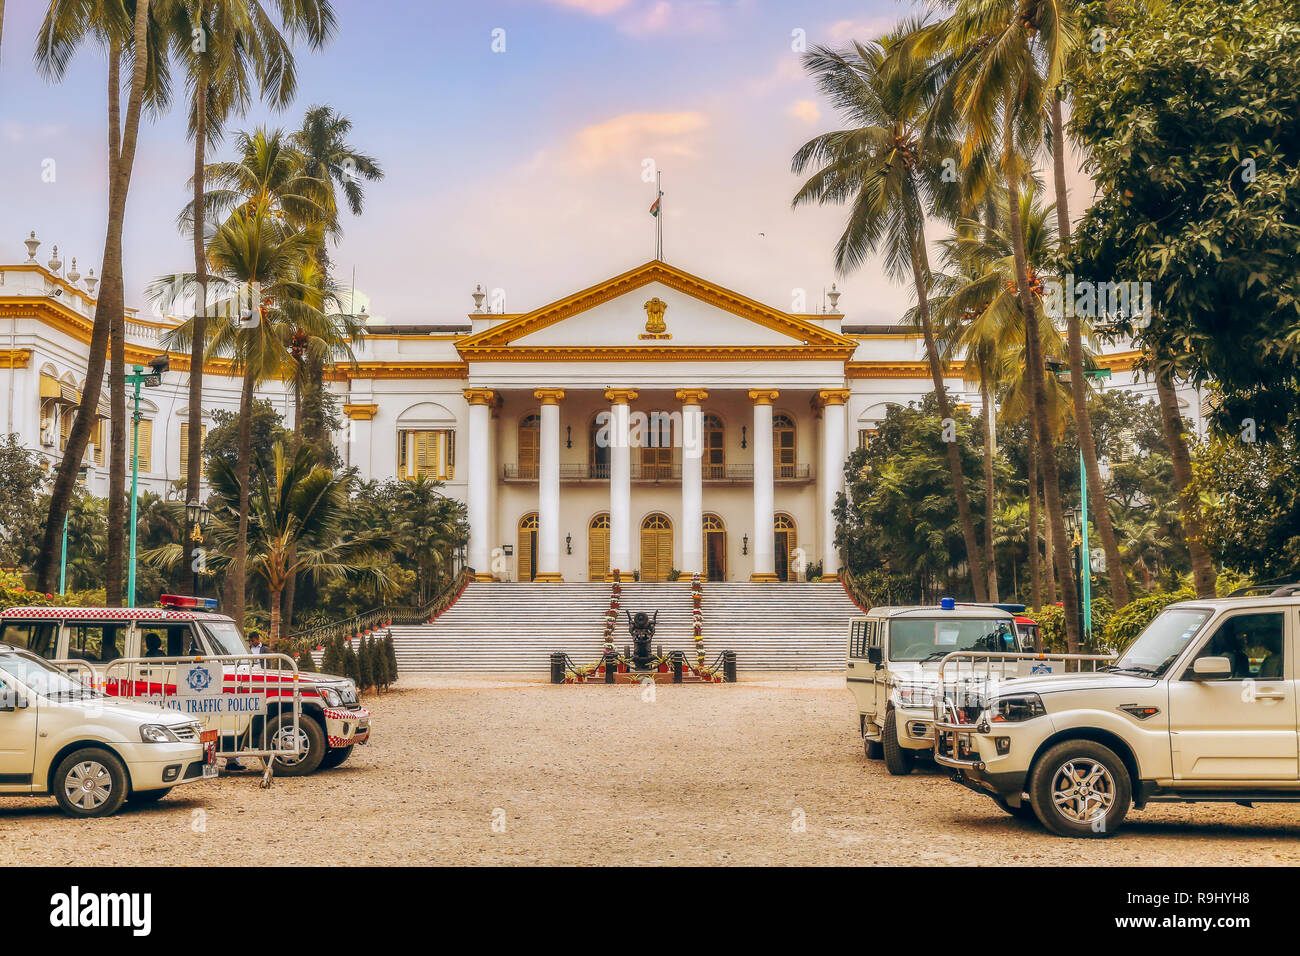 Casa del governatore è un famoso punto di riferimento della città e la classica città antica architettura coloniale struttura che ospita il governatore del Bengala Occidentale in India. Foto Stock